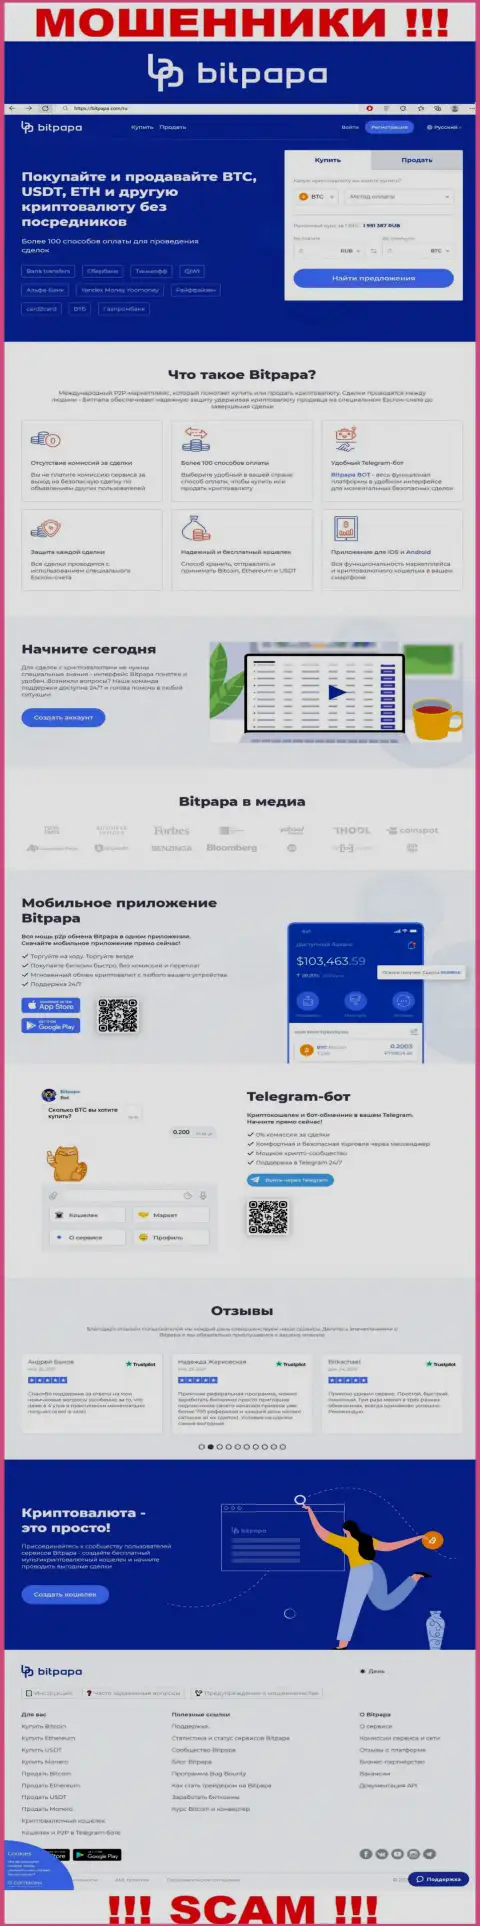 Фейковая информация от БитПапа на официальном сайте мошенников